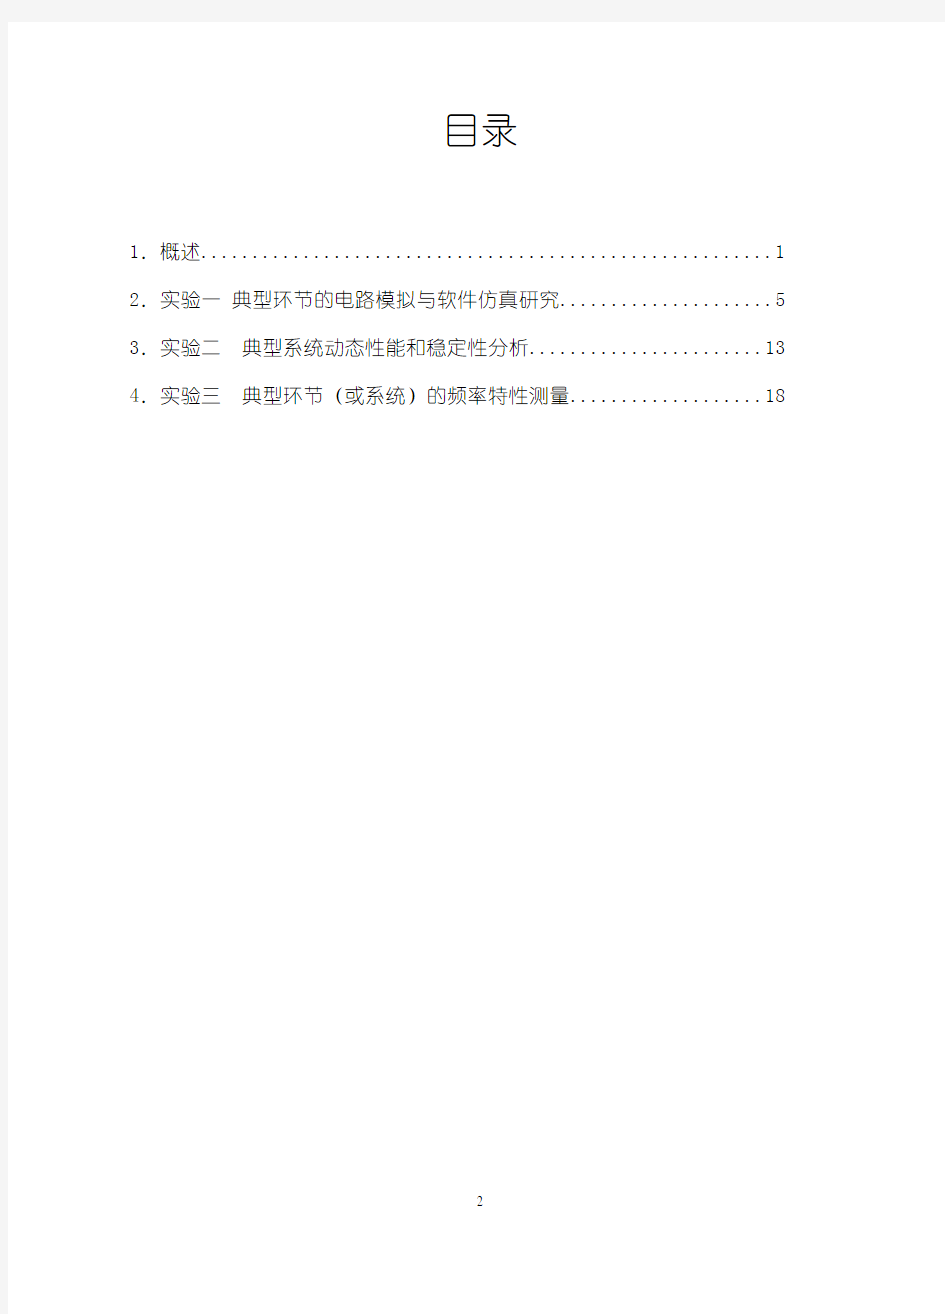 机械工程控制基础实验指导书.5.pdf